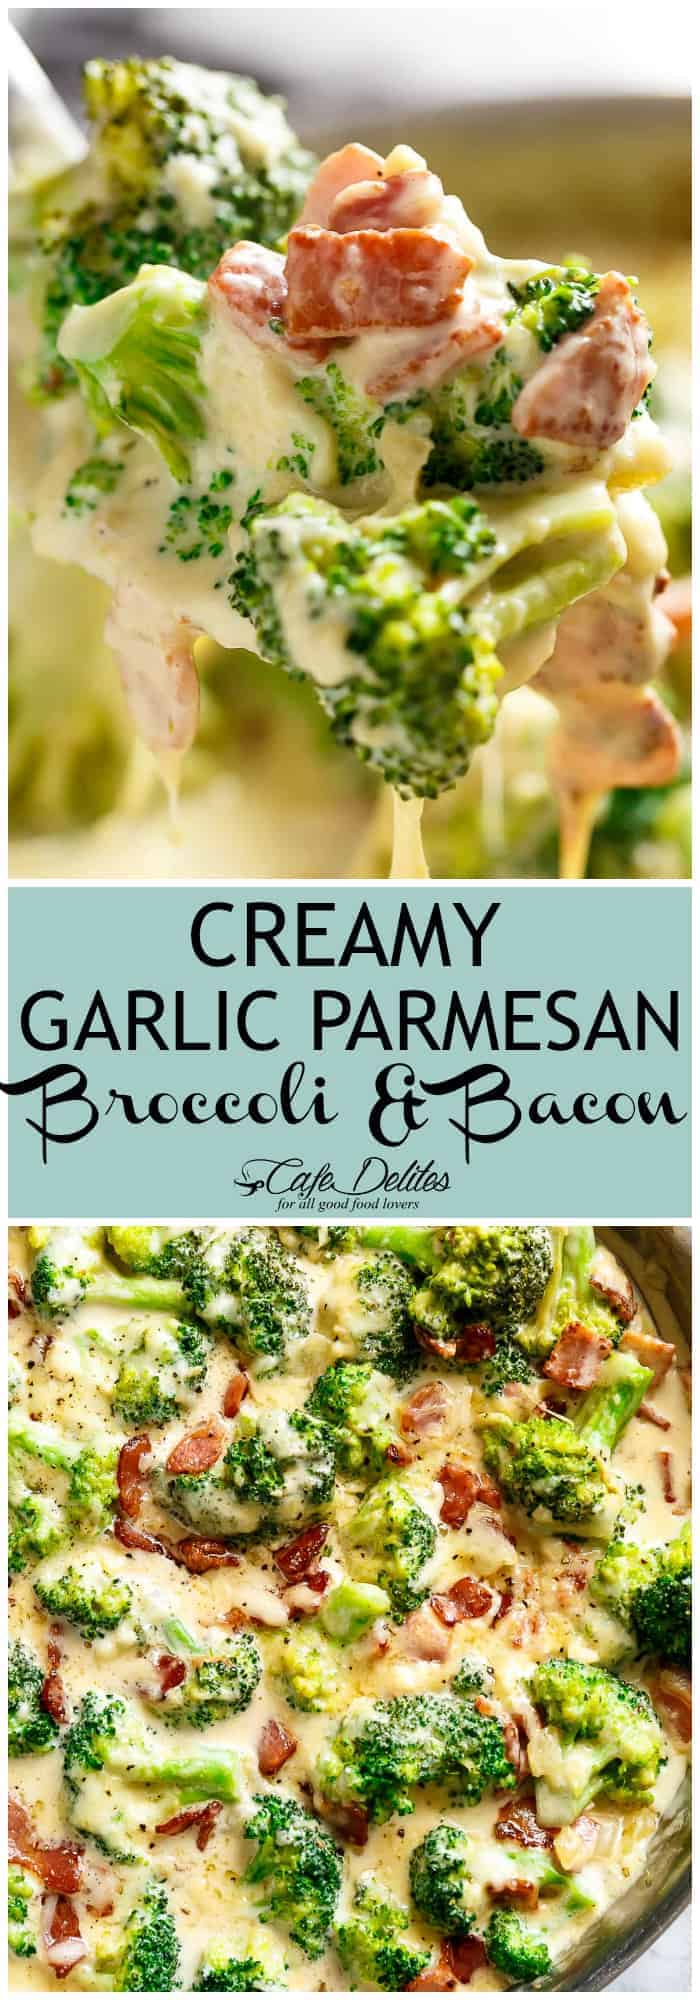 Creamy Broccoli & Bacon - Cafe Delites